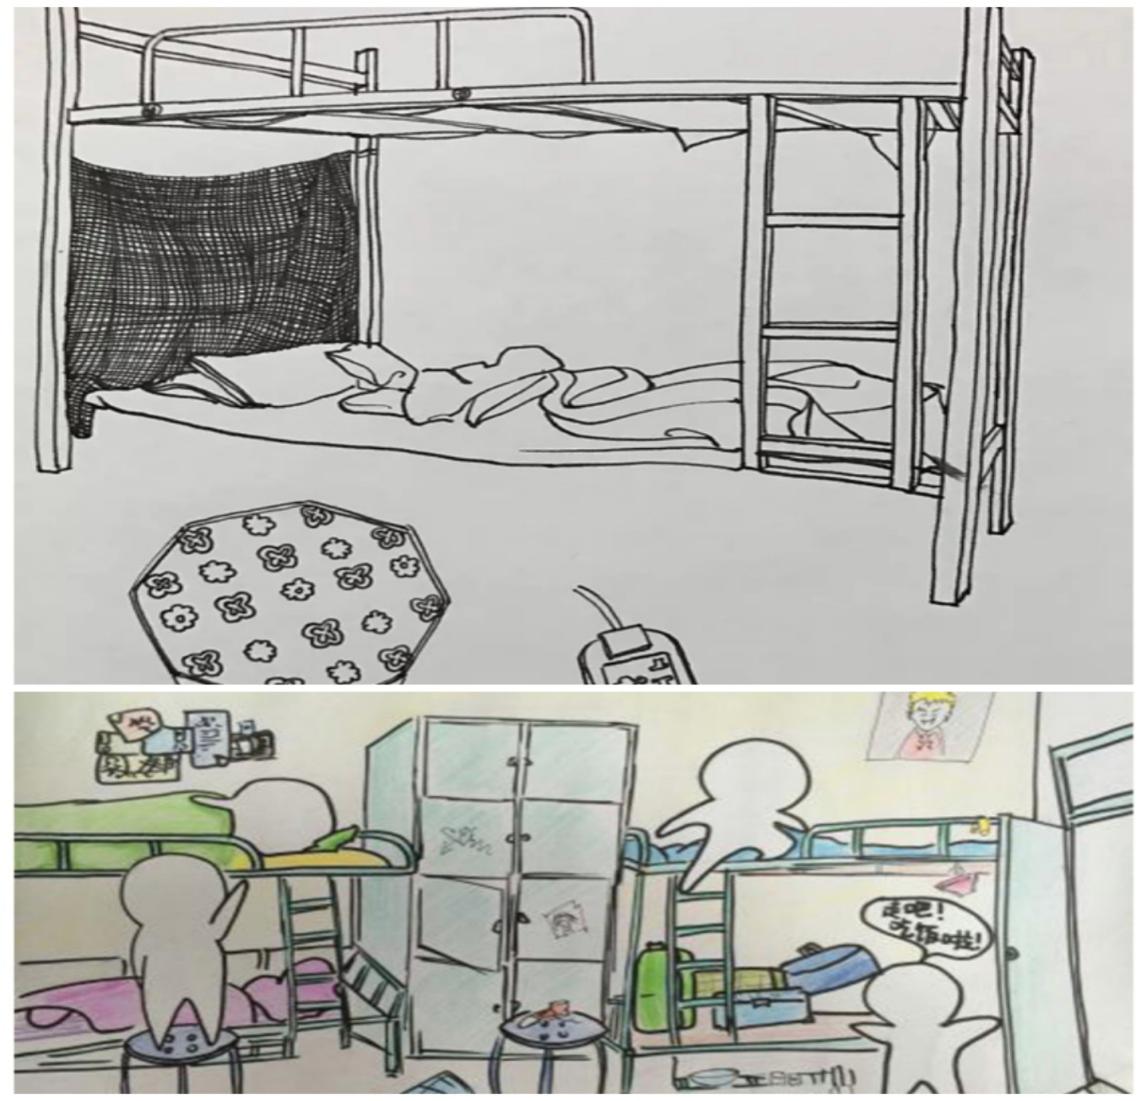 土木学院:宿舍友情手绘漫画大赛促和谐关系